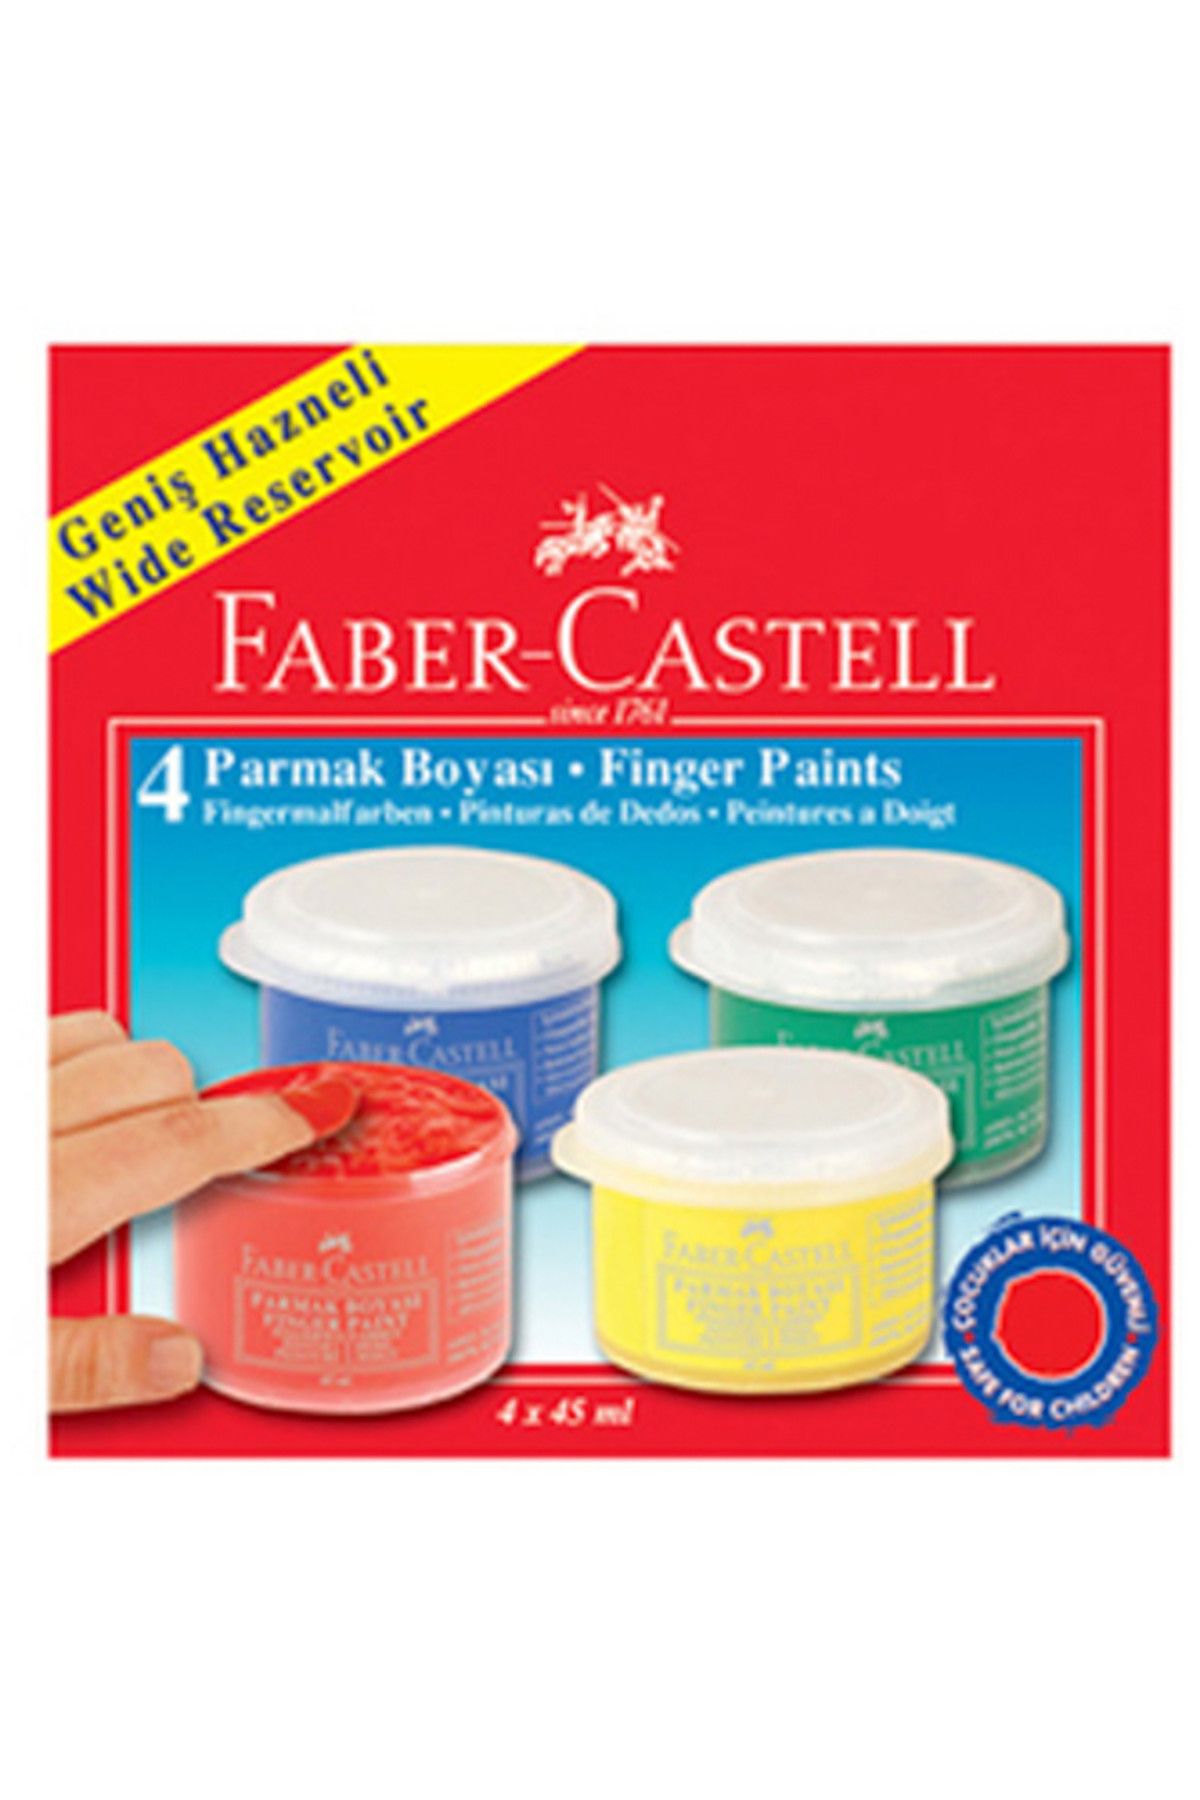 Faber Castell Faber-Castell Parmak Boyası 4 Renk 45 Ml 218814